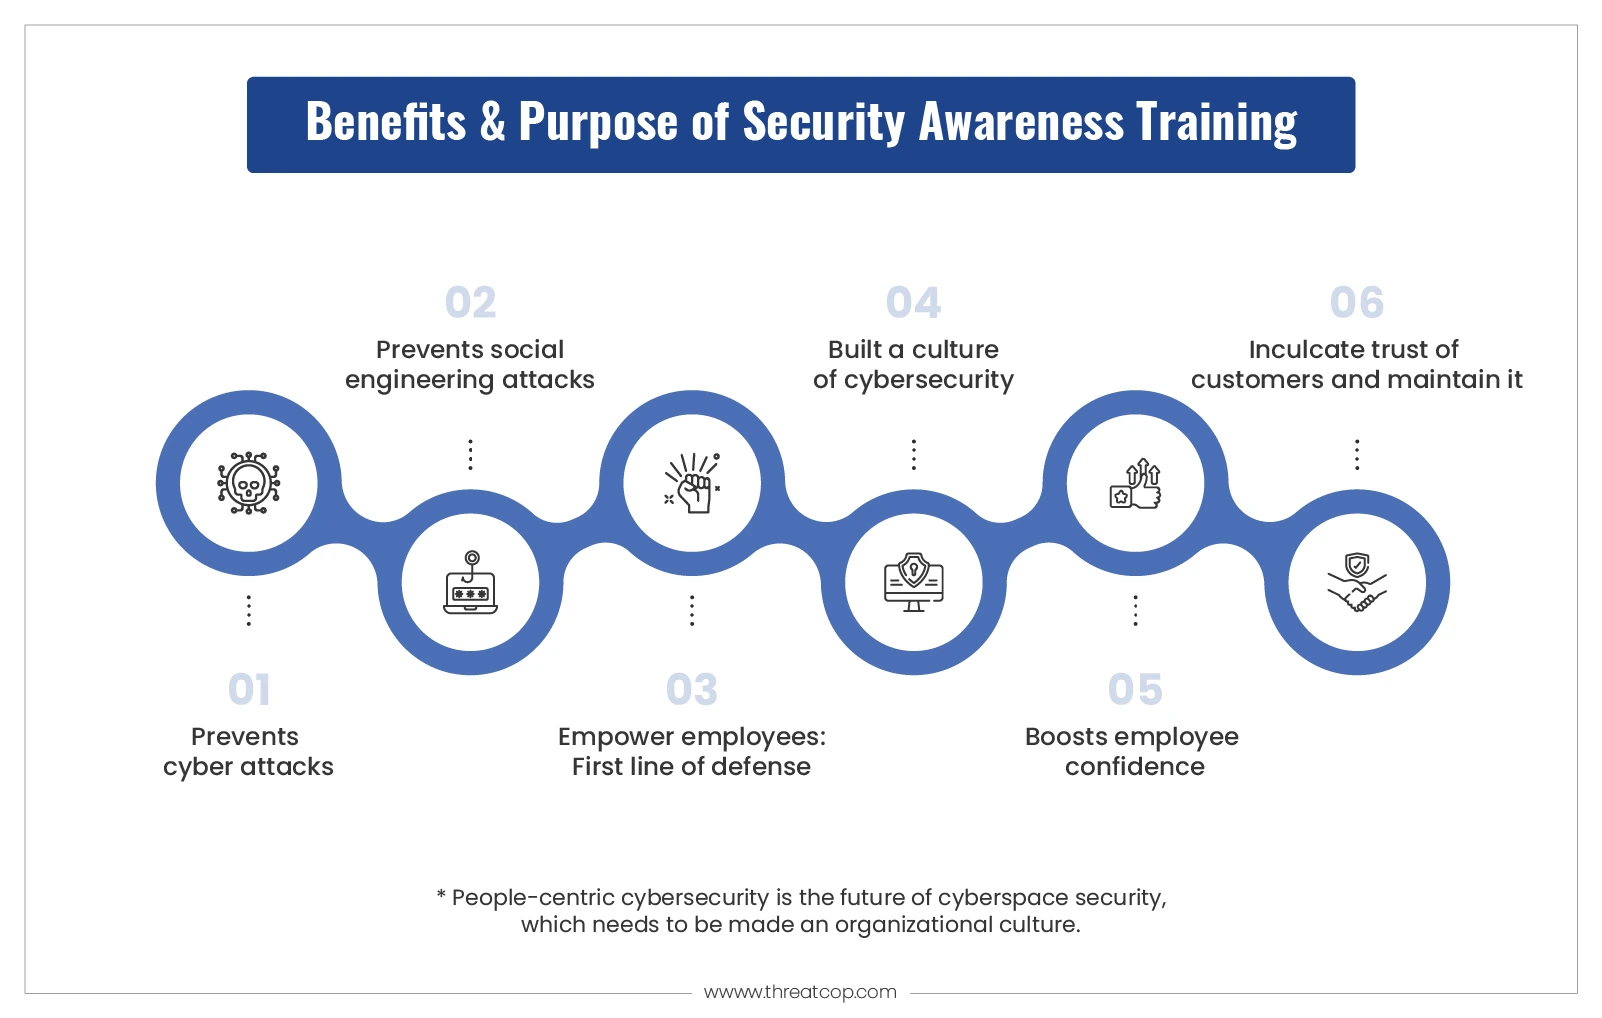 Benefits of Security Awareness Training